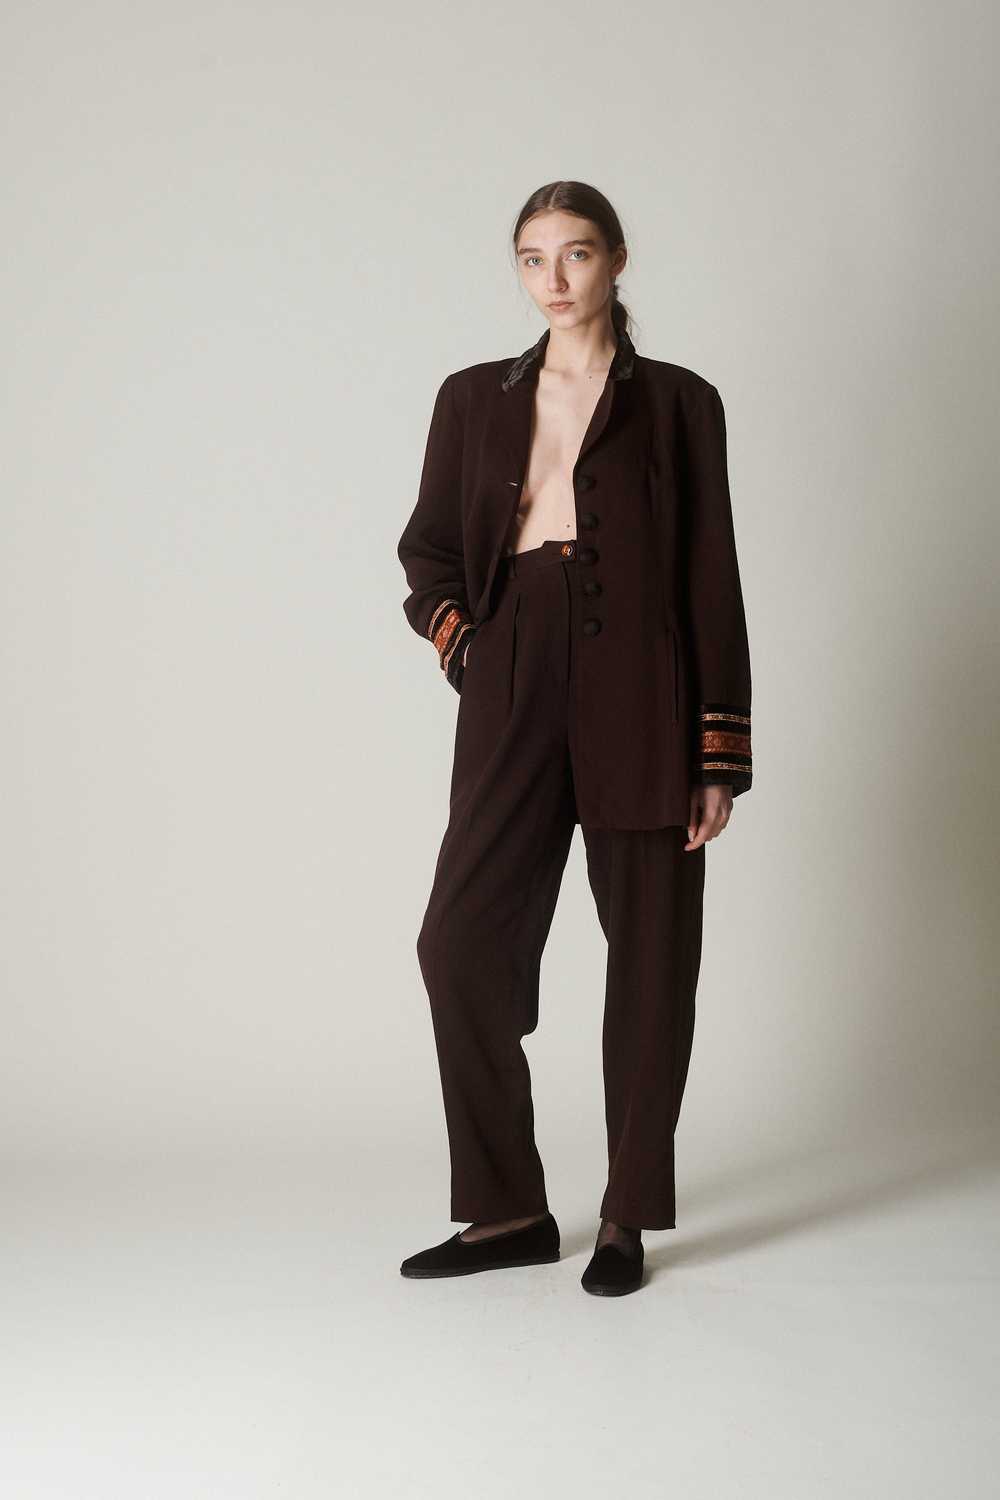 Vintage Kenzo Wool Suit - image 1